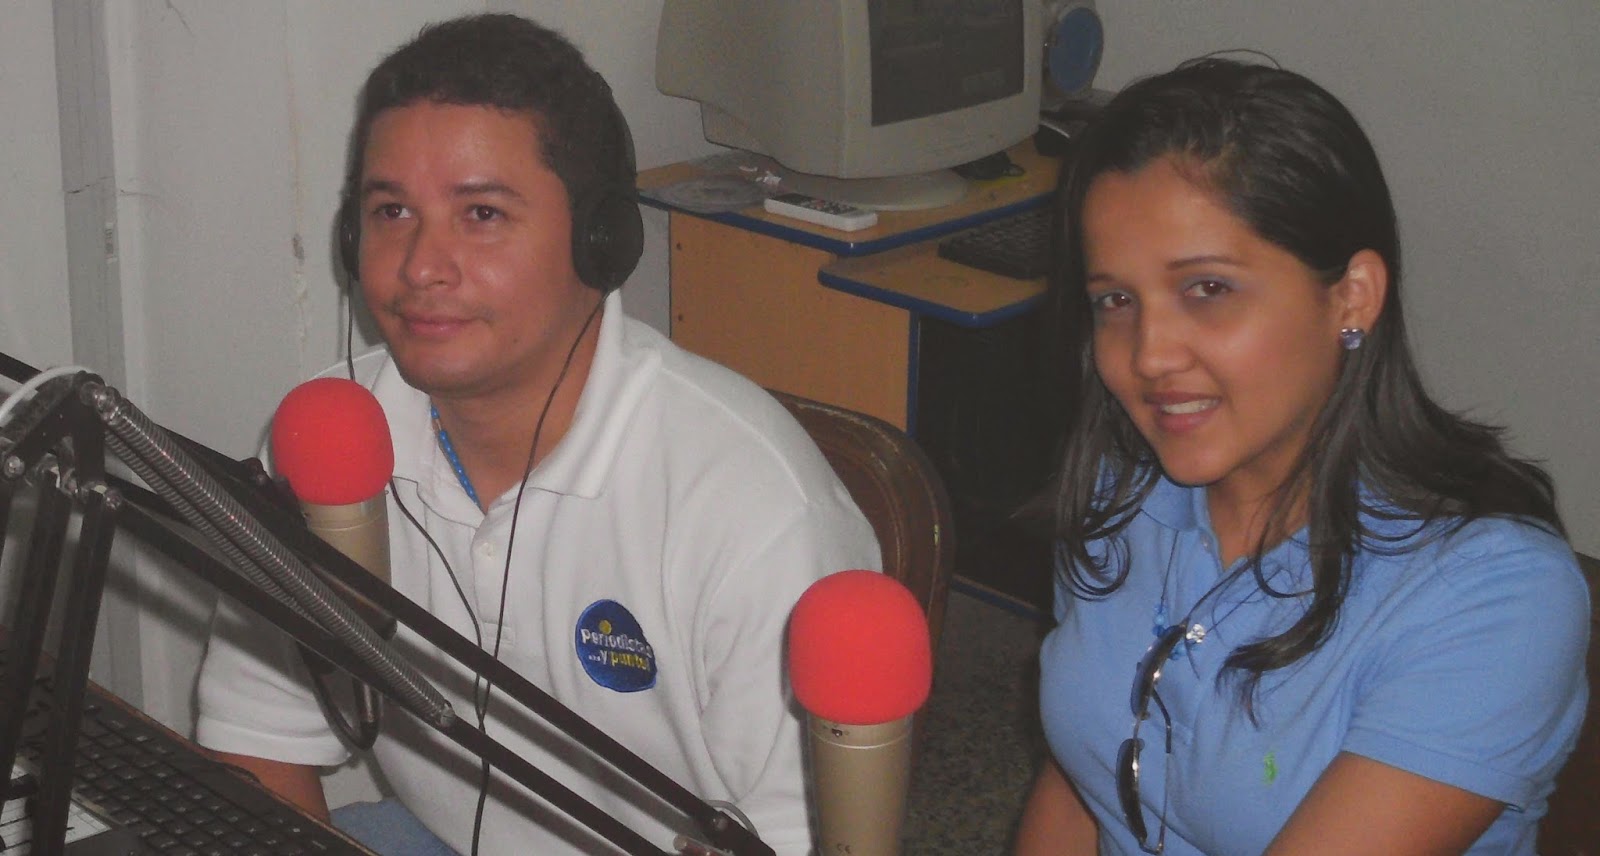 Senderos de Apure “Especial de Navidad” por Fe y Alegría 103.7FM San Fernando. “Música bailable Navideña”.